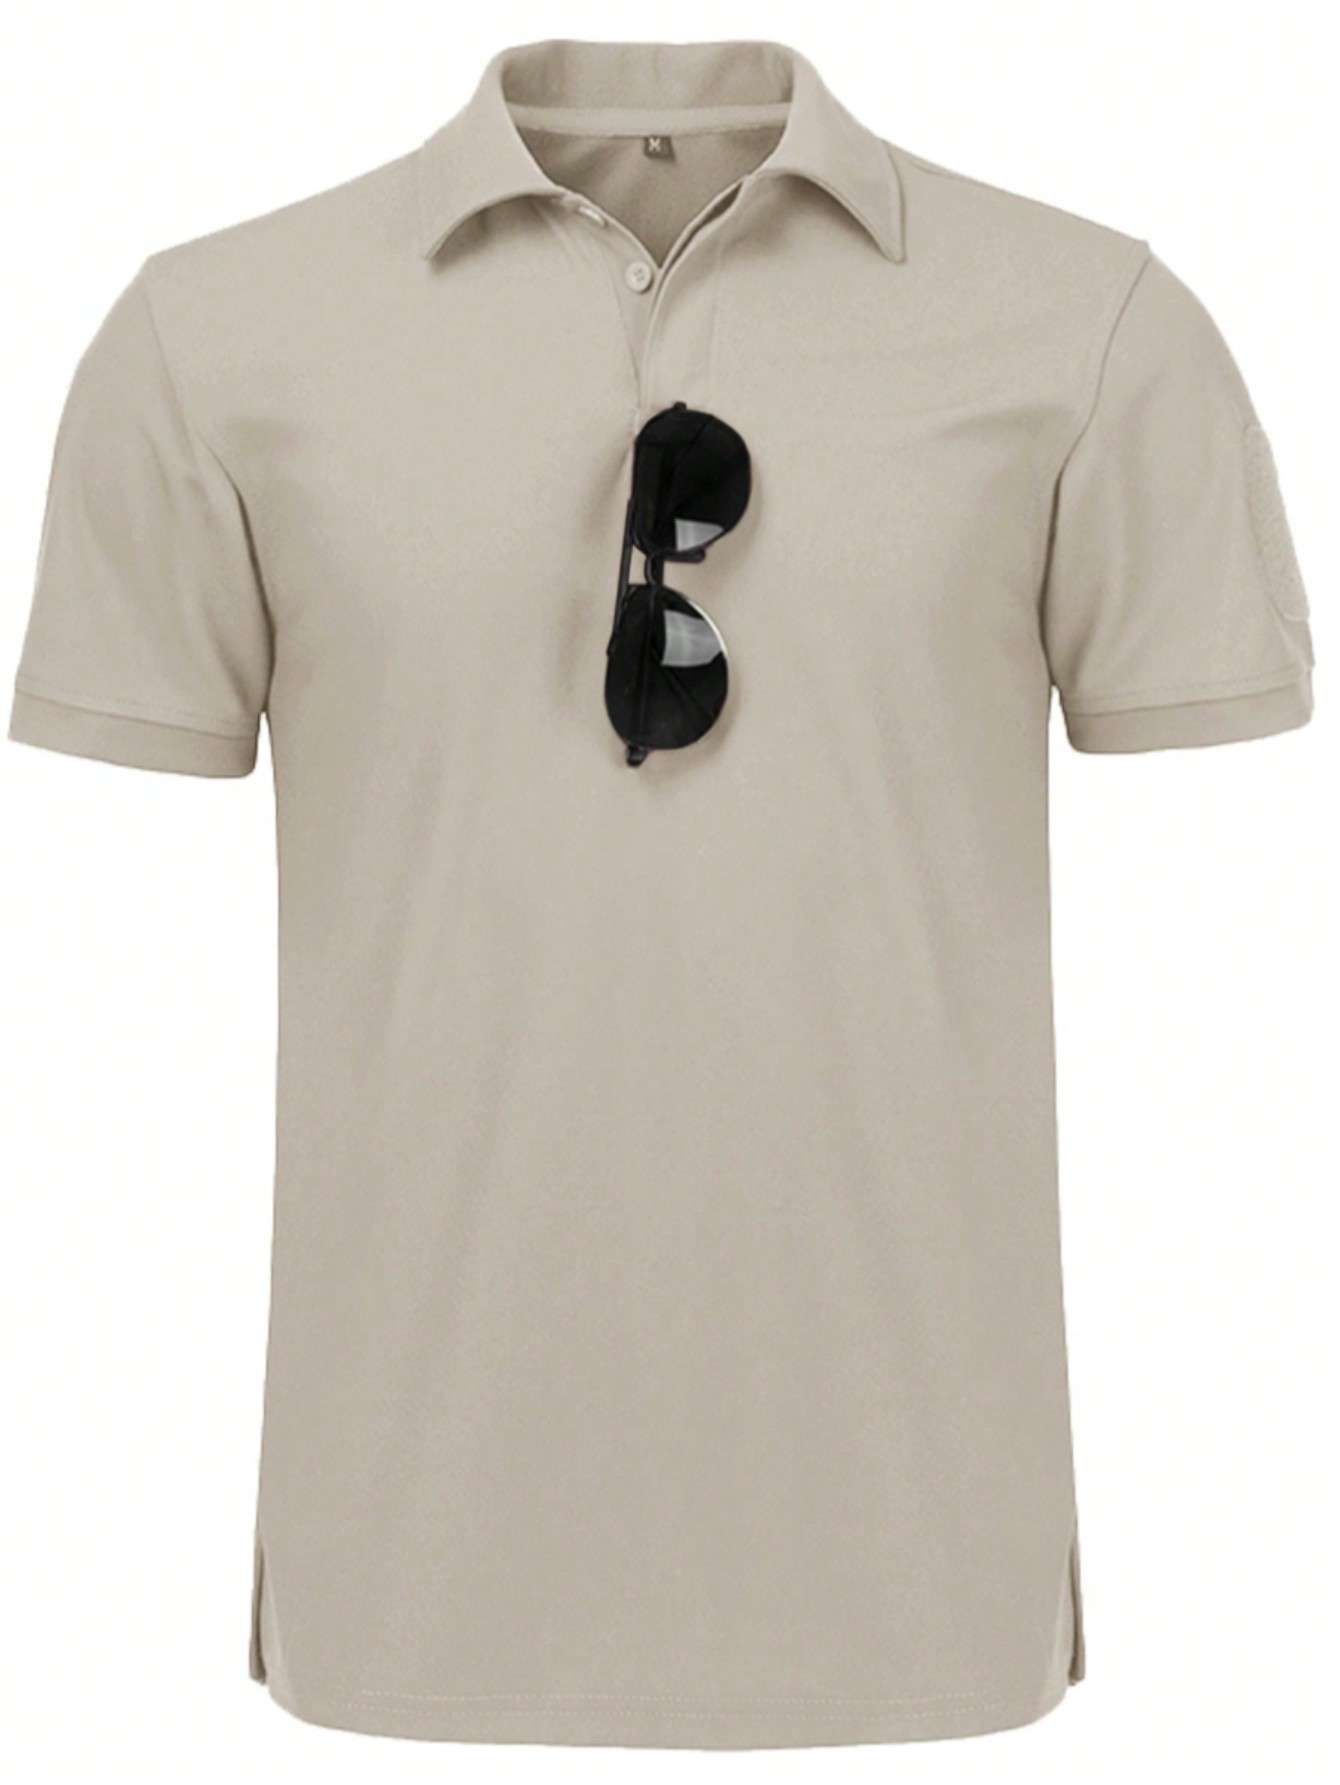 Мужская рубашка поло с коротким рукавом для отдыха, бежевый летняя тонкая стильная ледяная рубашка поло с лацканами мужская футболка большого размера с коротким рукавом мужская свободная футболка